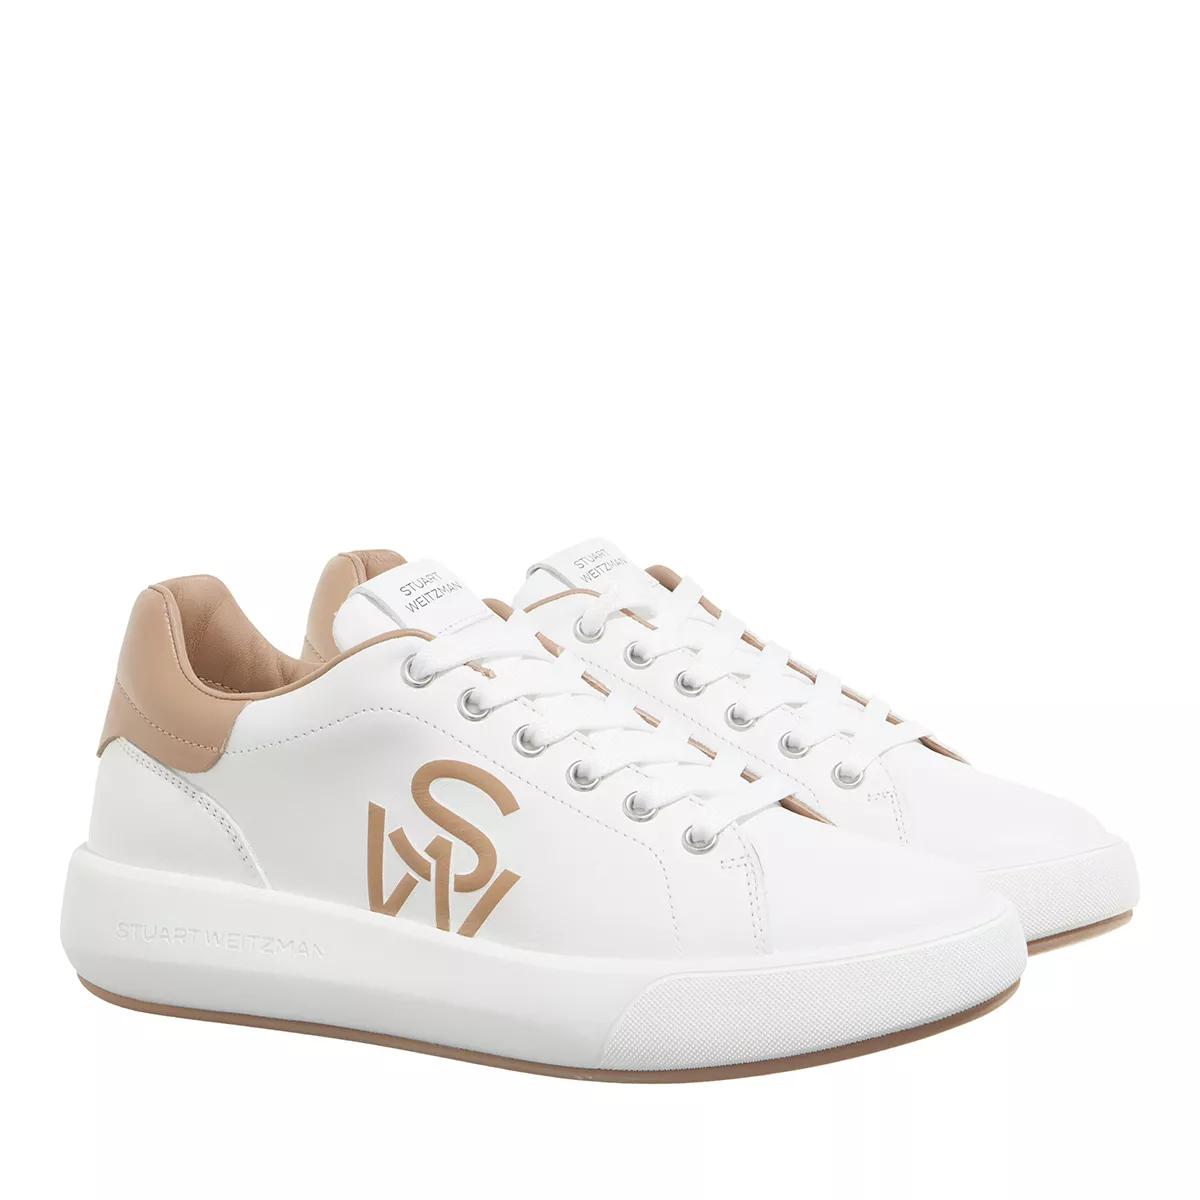 Stuart Weitzman Sneakers - SW PRO SNEAKER - Gr. 39 (EU) - in Weiß - für Damen von Stuart Weitzman